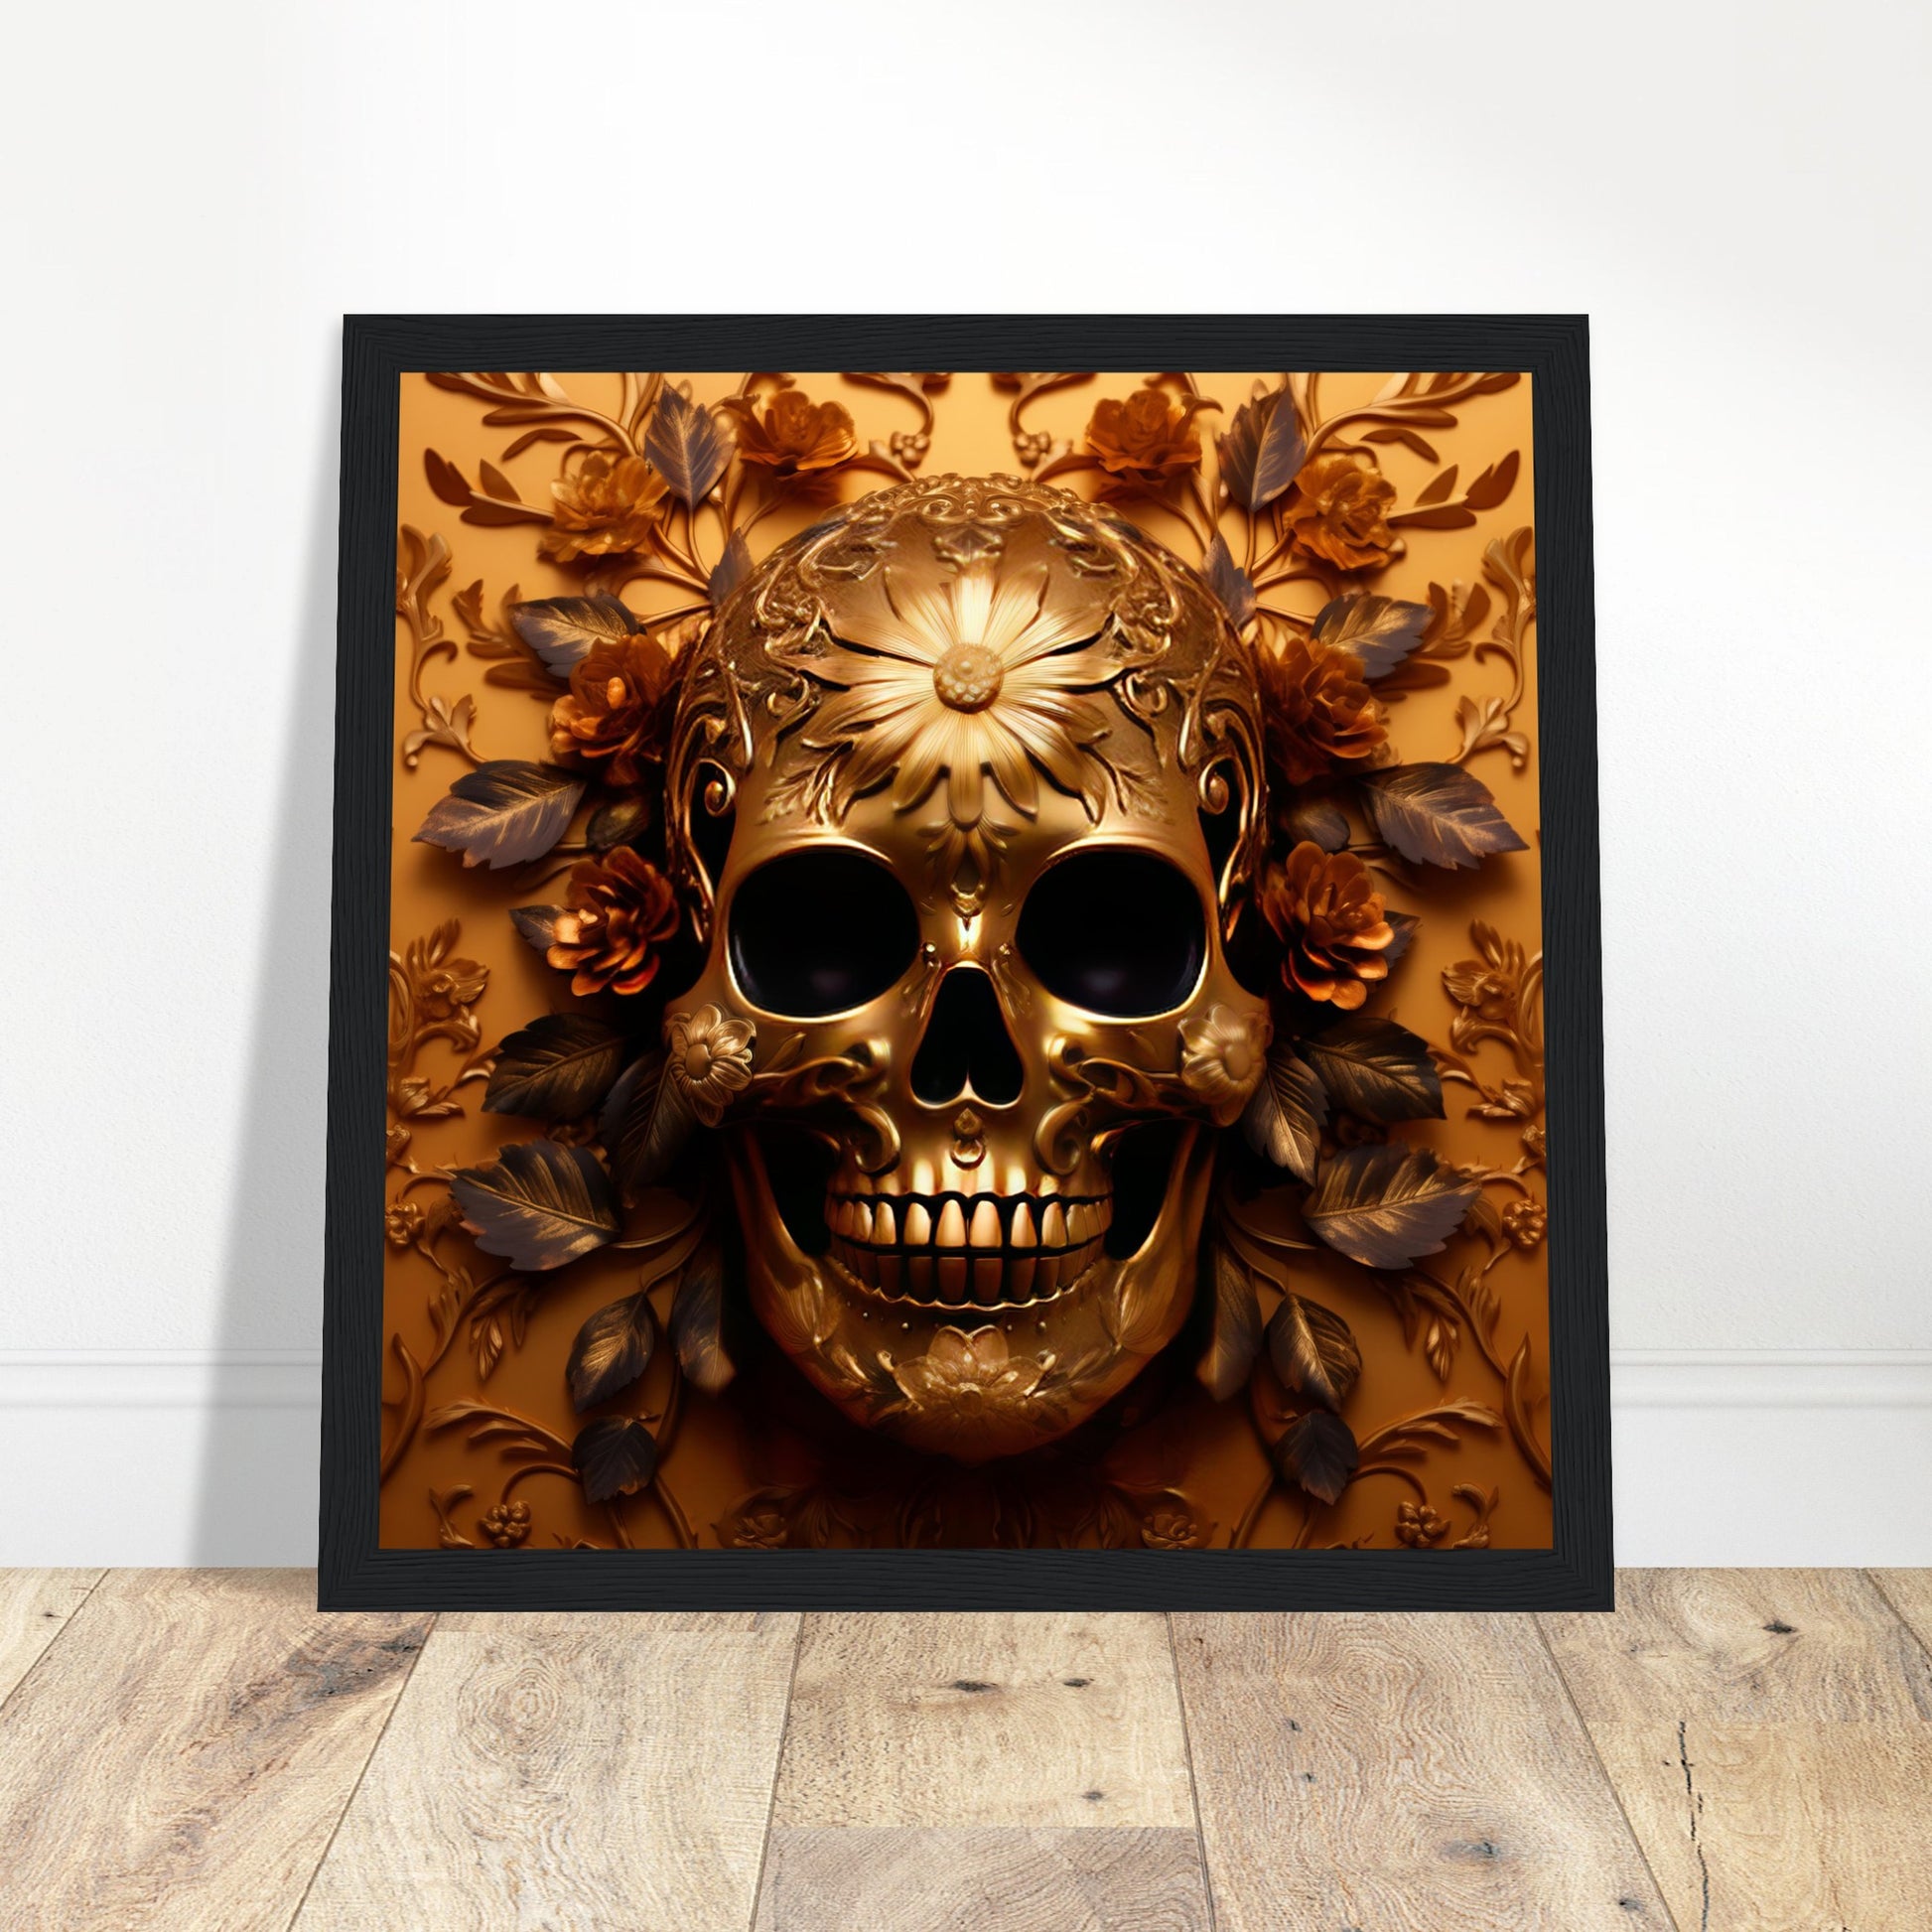 Golden Skull Artwork - Print Room Ltd Wood frame 30x30 cm / 12x12"